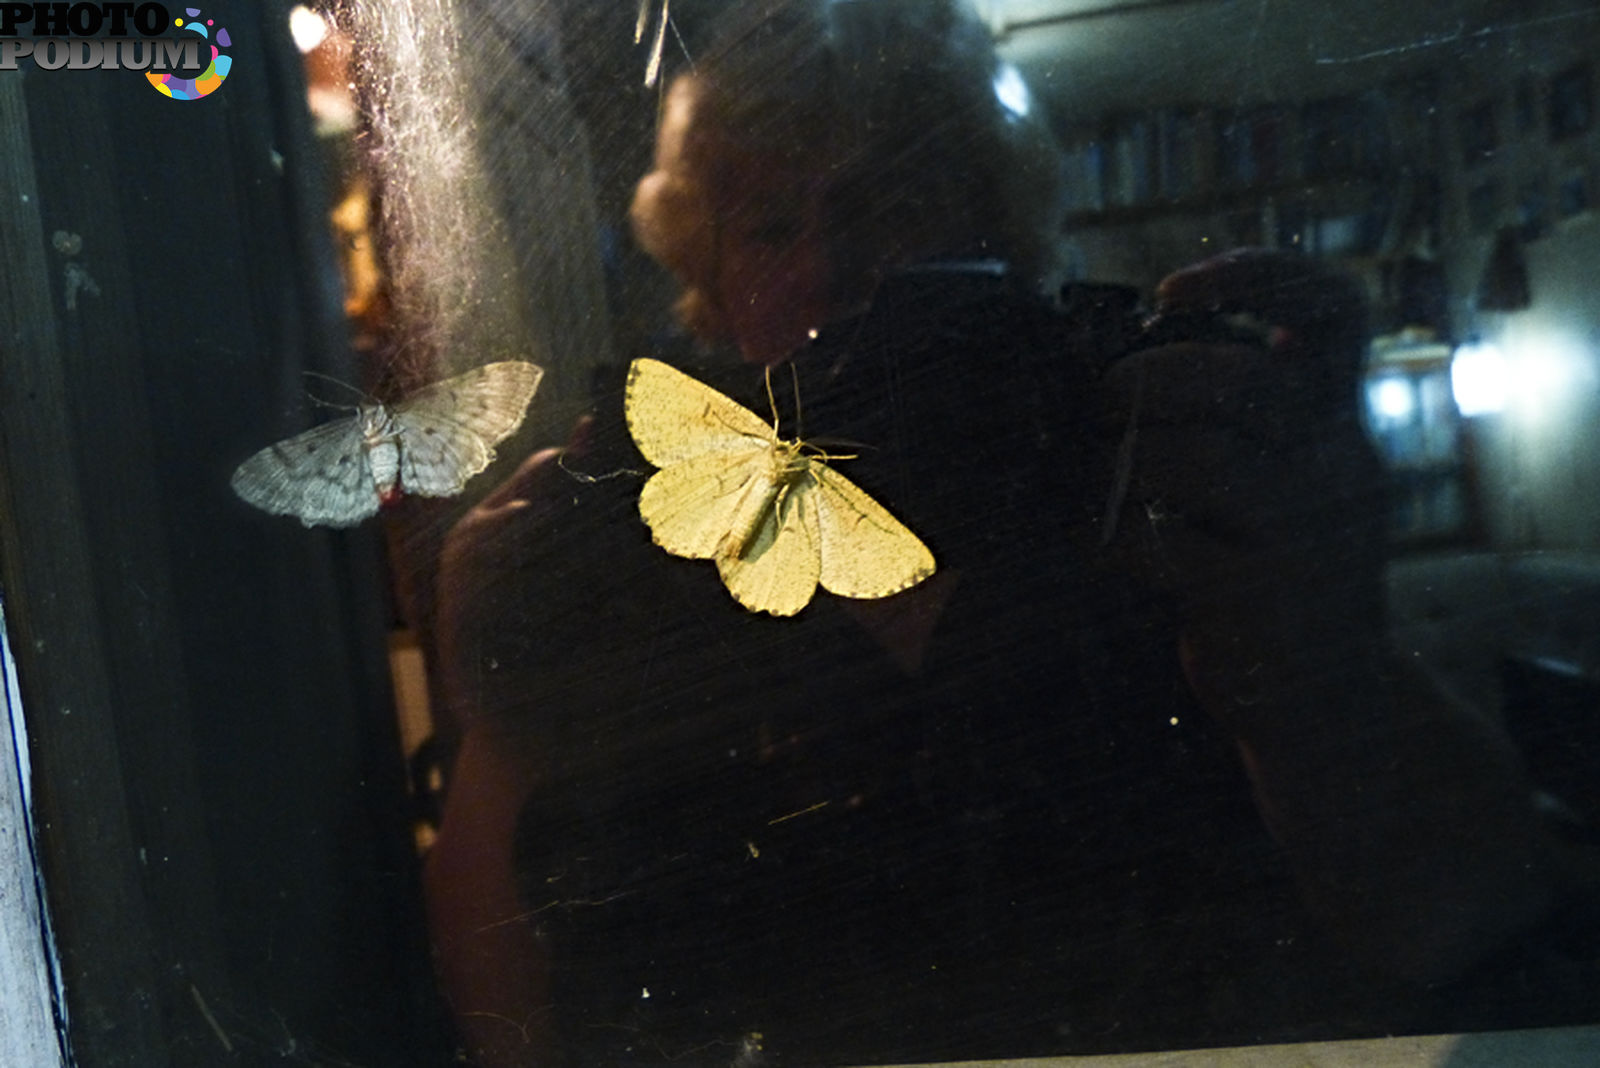 Ночная бабочка садится на раскрытую книгу